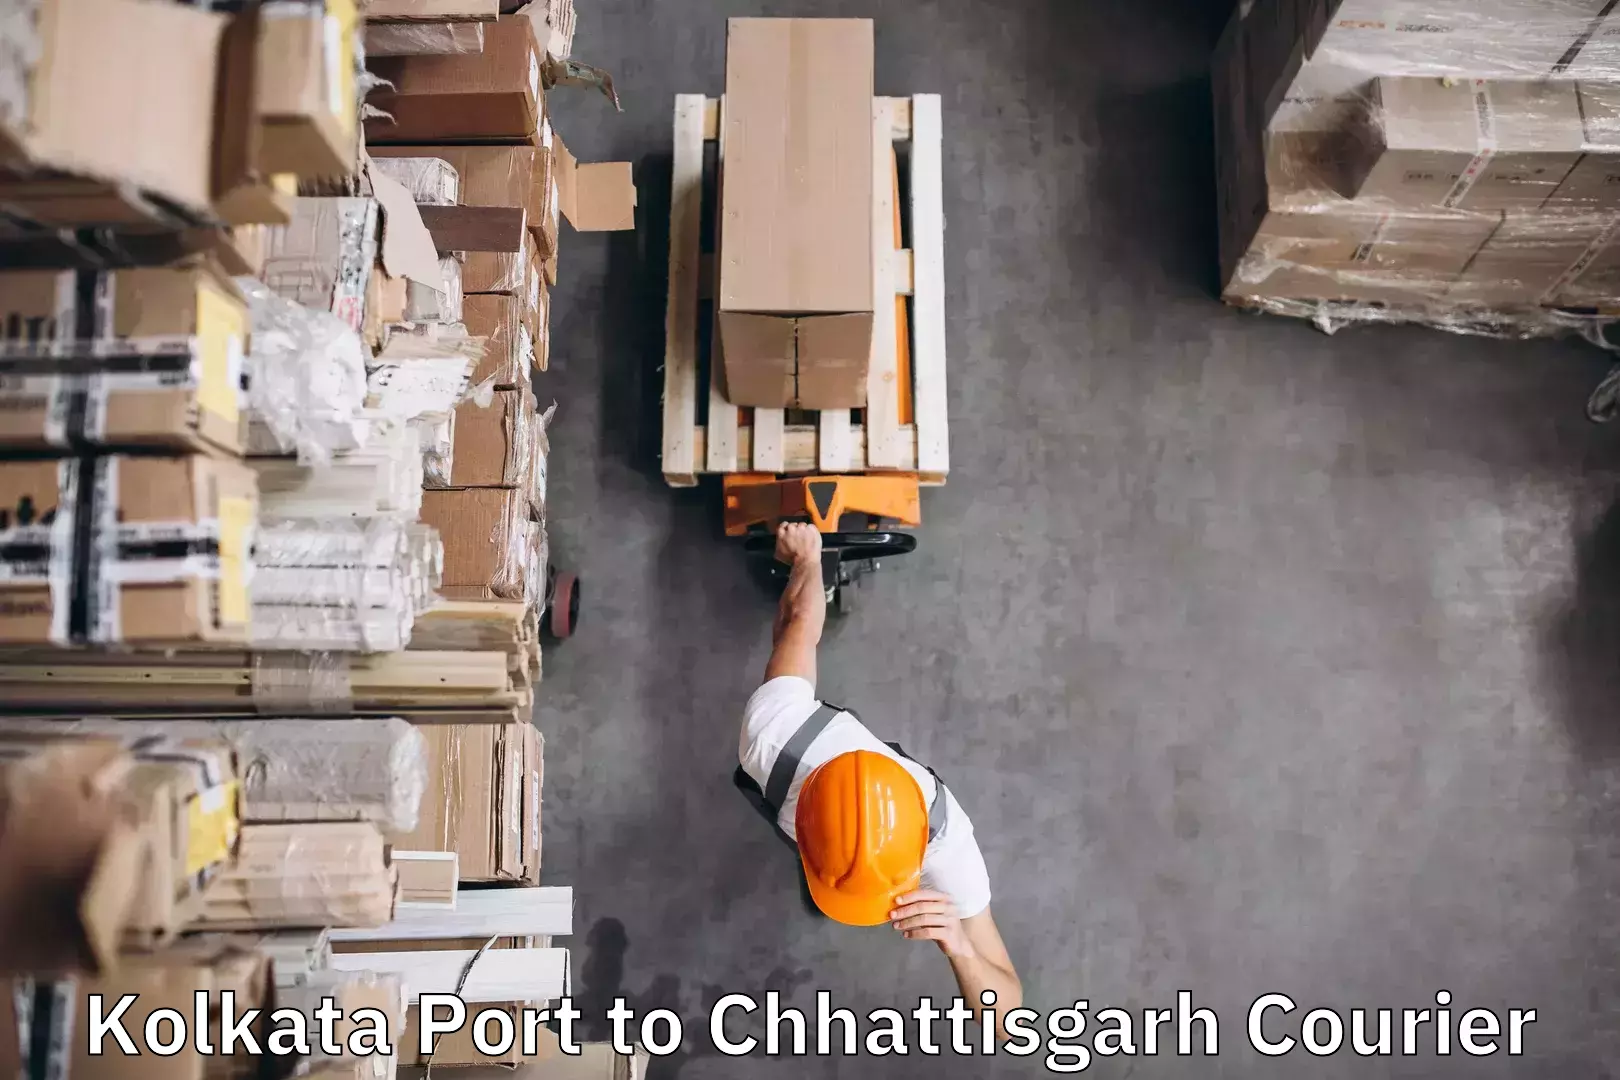 Luggage delivery app Kolkata Port to Sakti